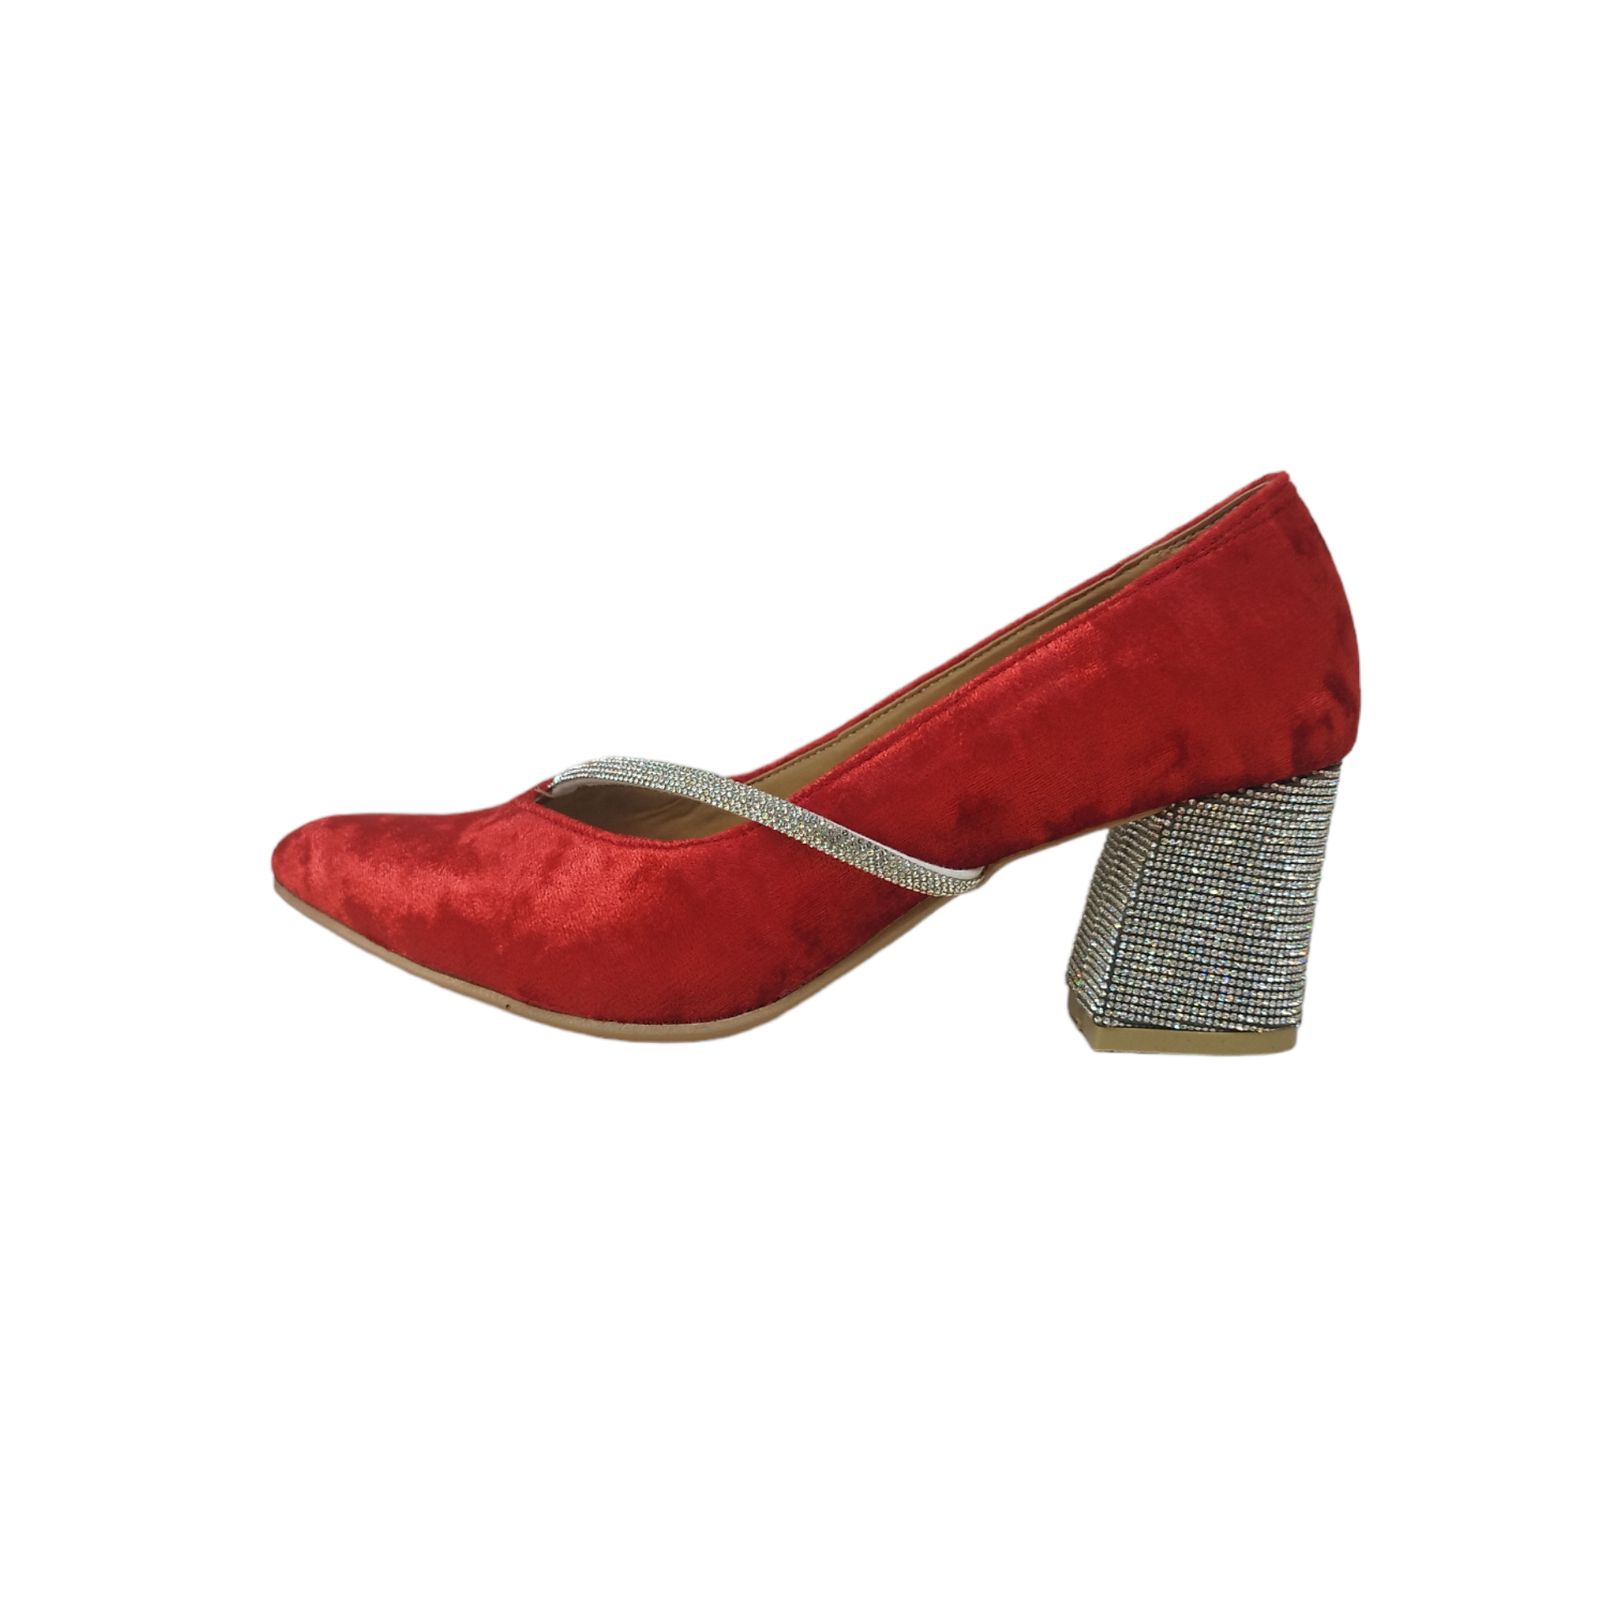 کفش زنانه مدل ZPOM 06 مخمل نگین دار رنگ قرمز -  - 1